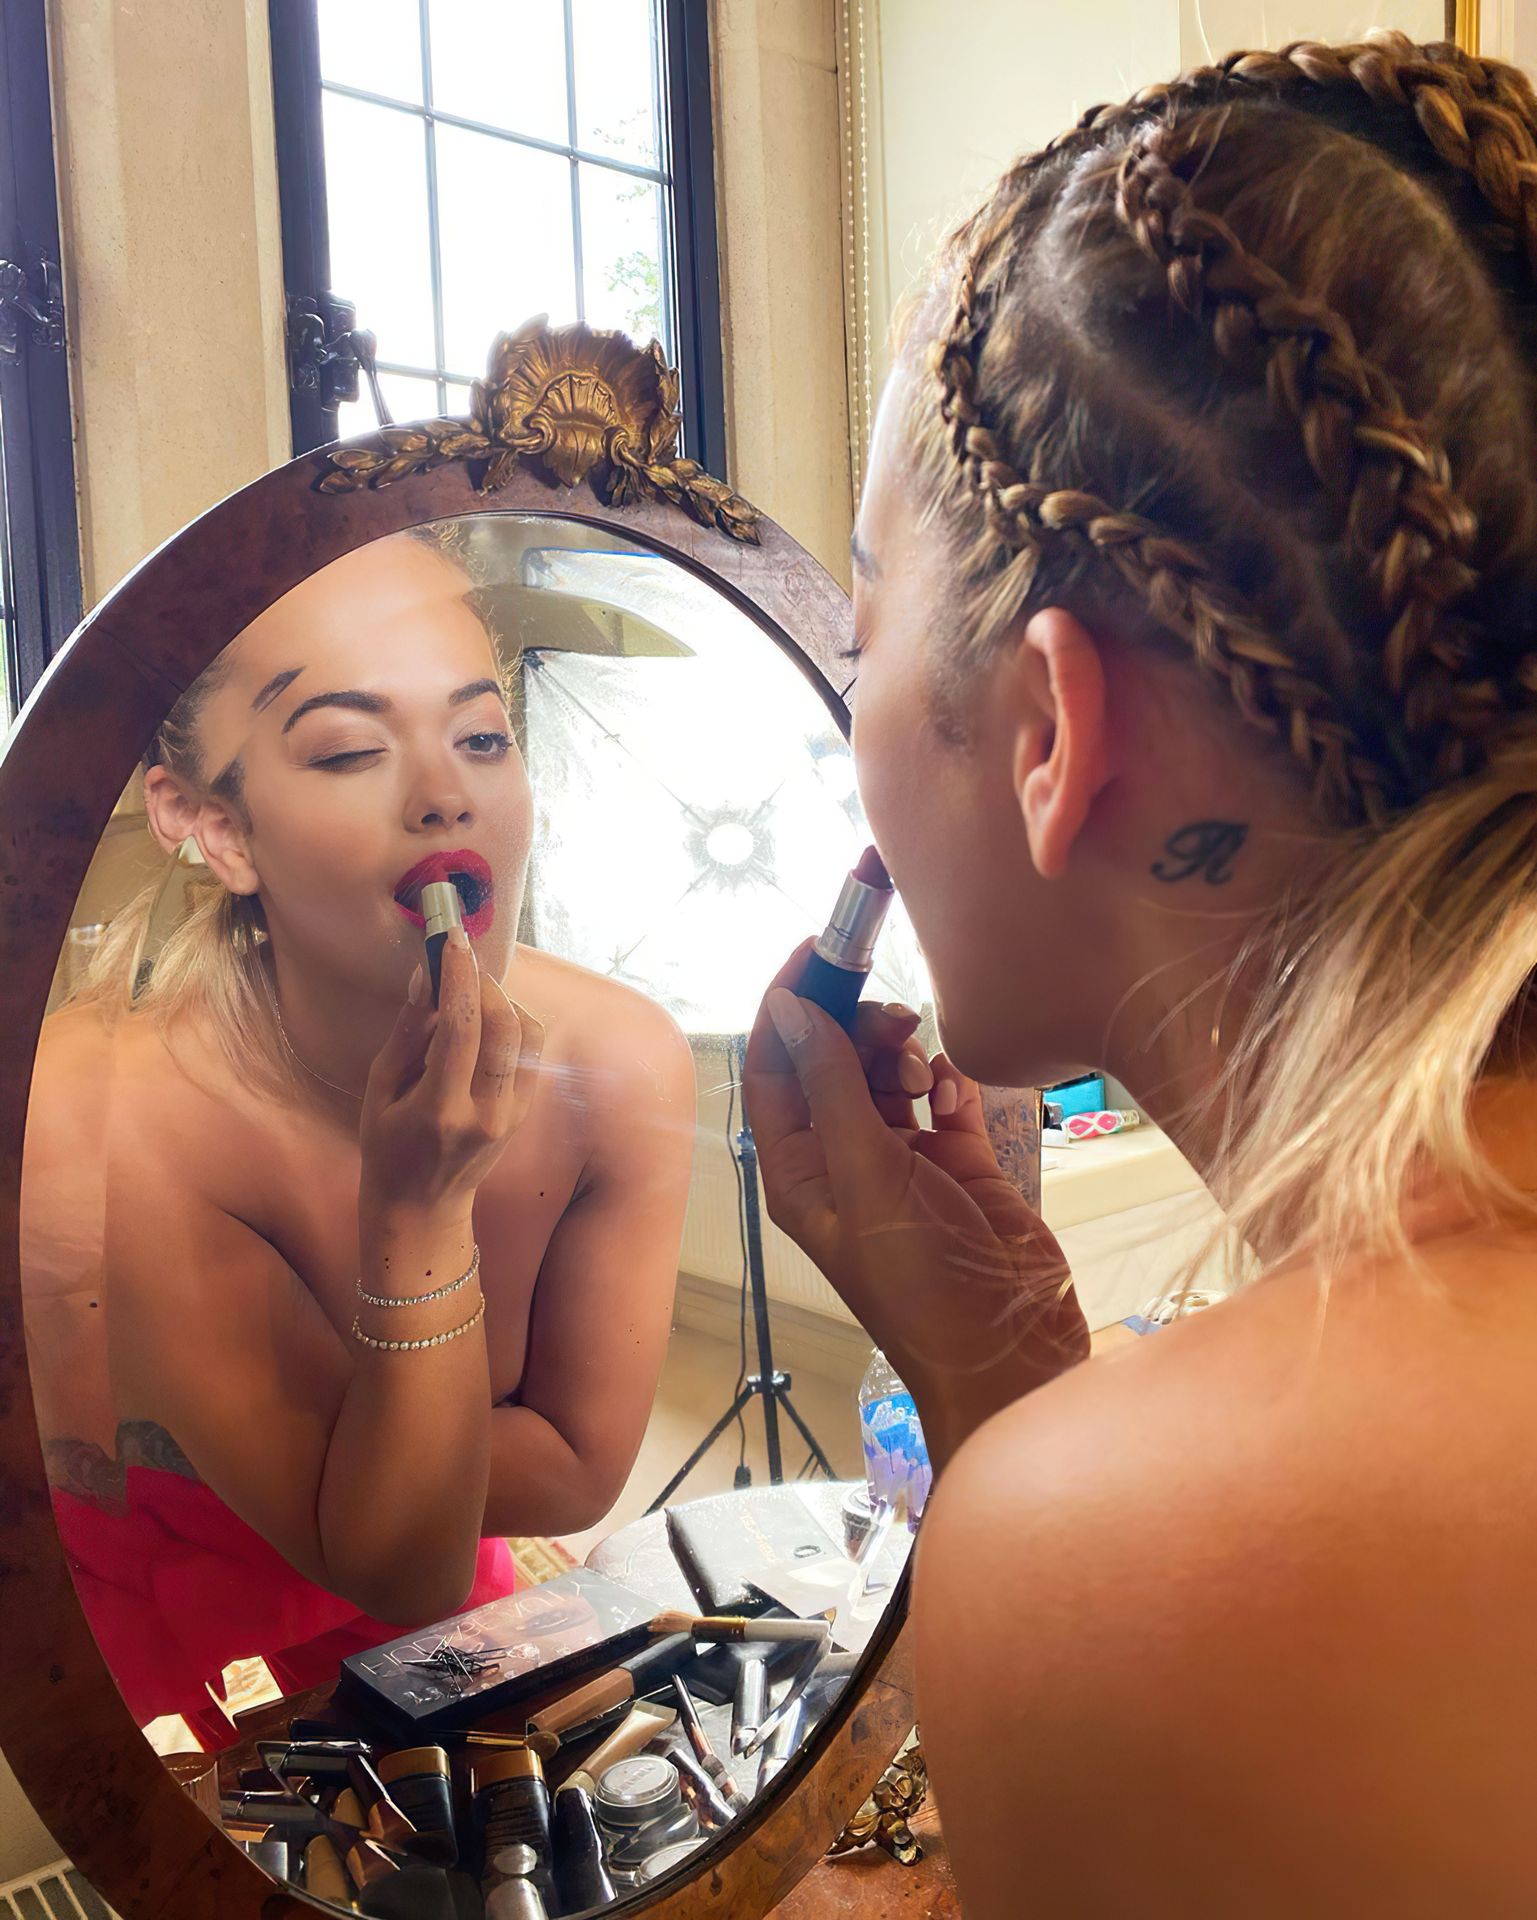 Rita Ora Nude Photos 2020 